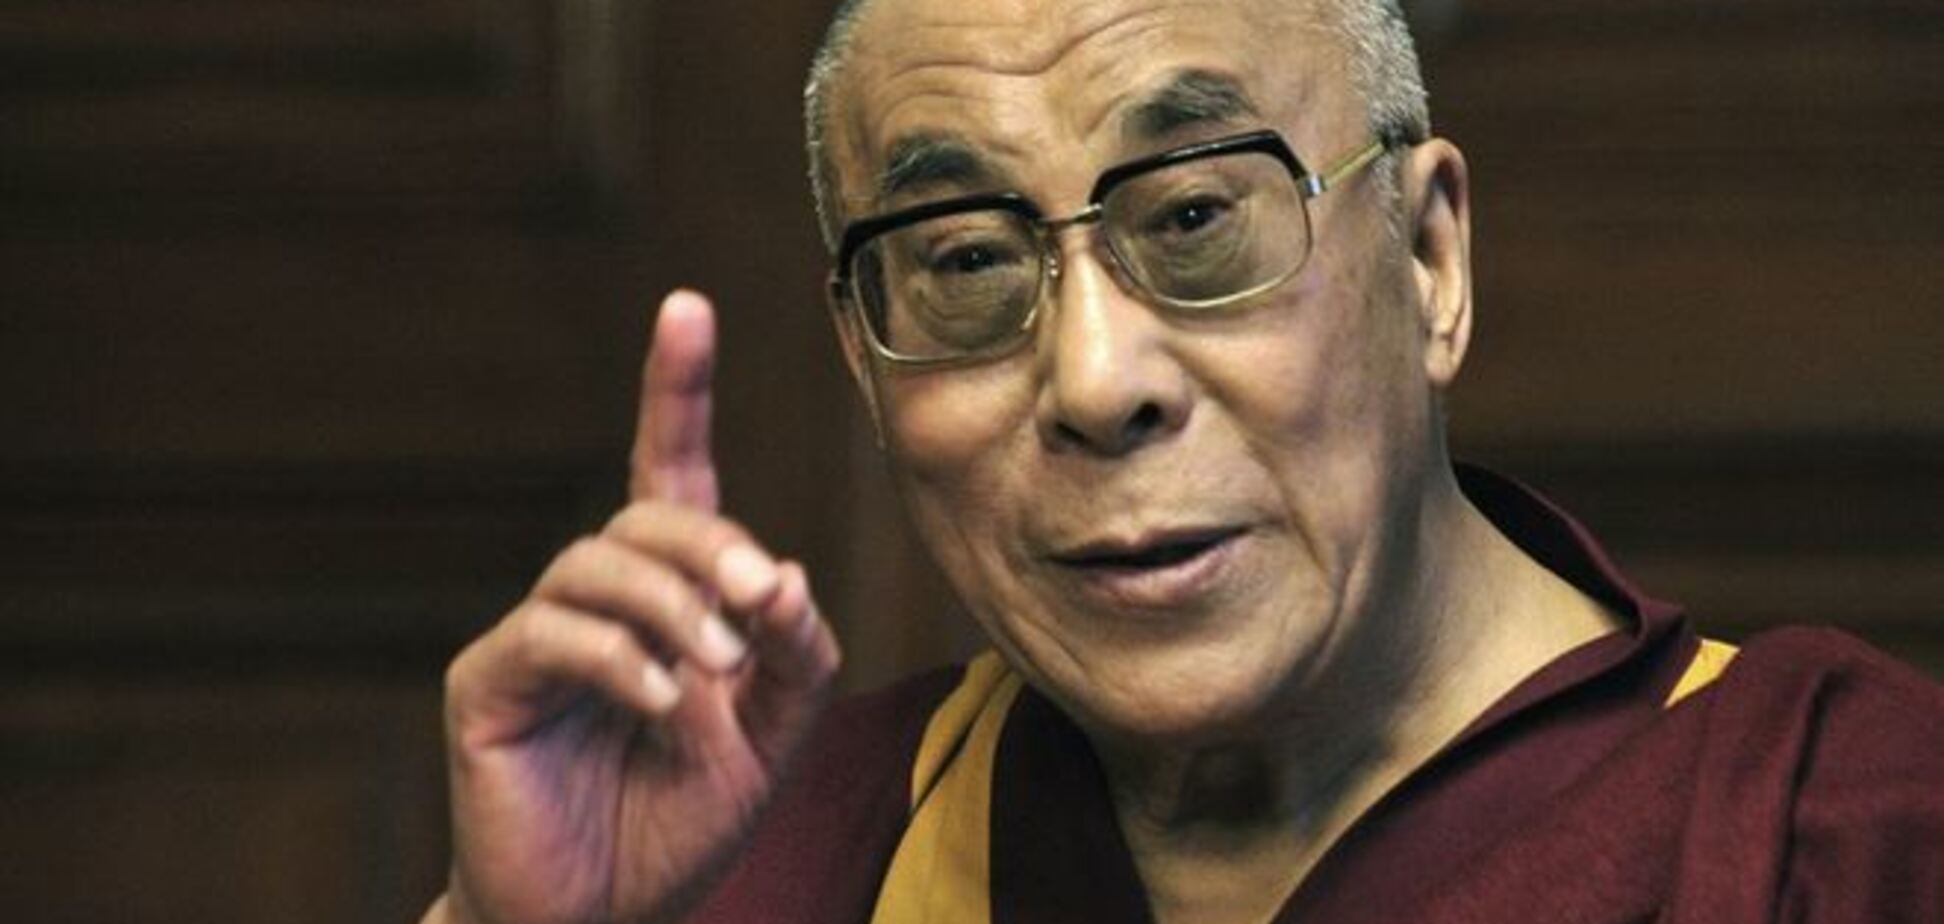 Третю світову війну може почати божевільний з ядерною кнопкою - Далай-лама 